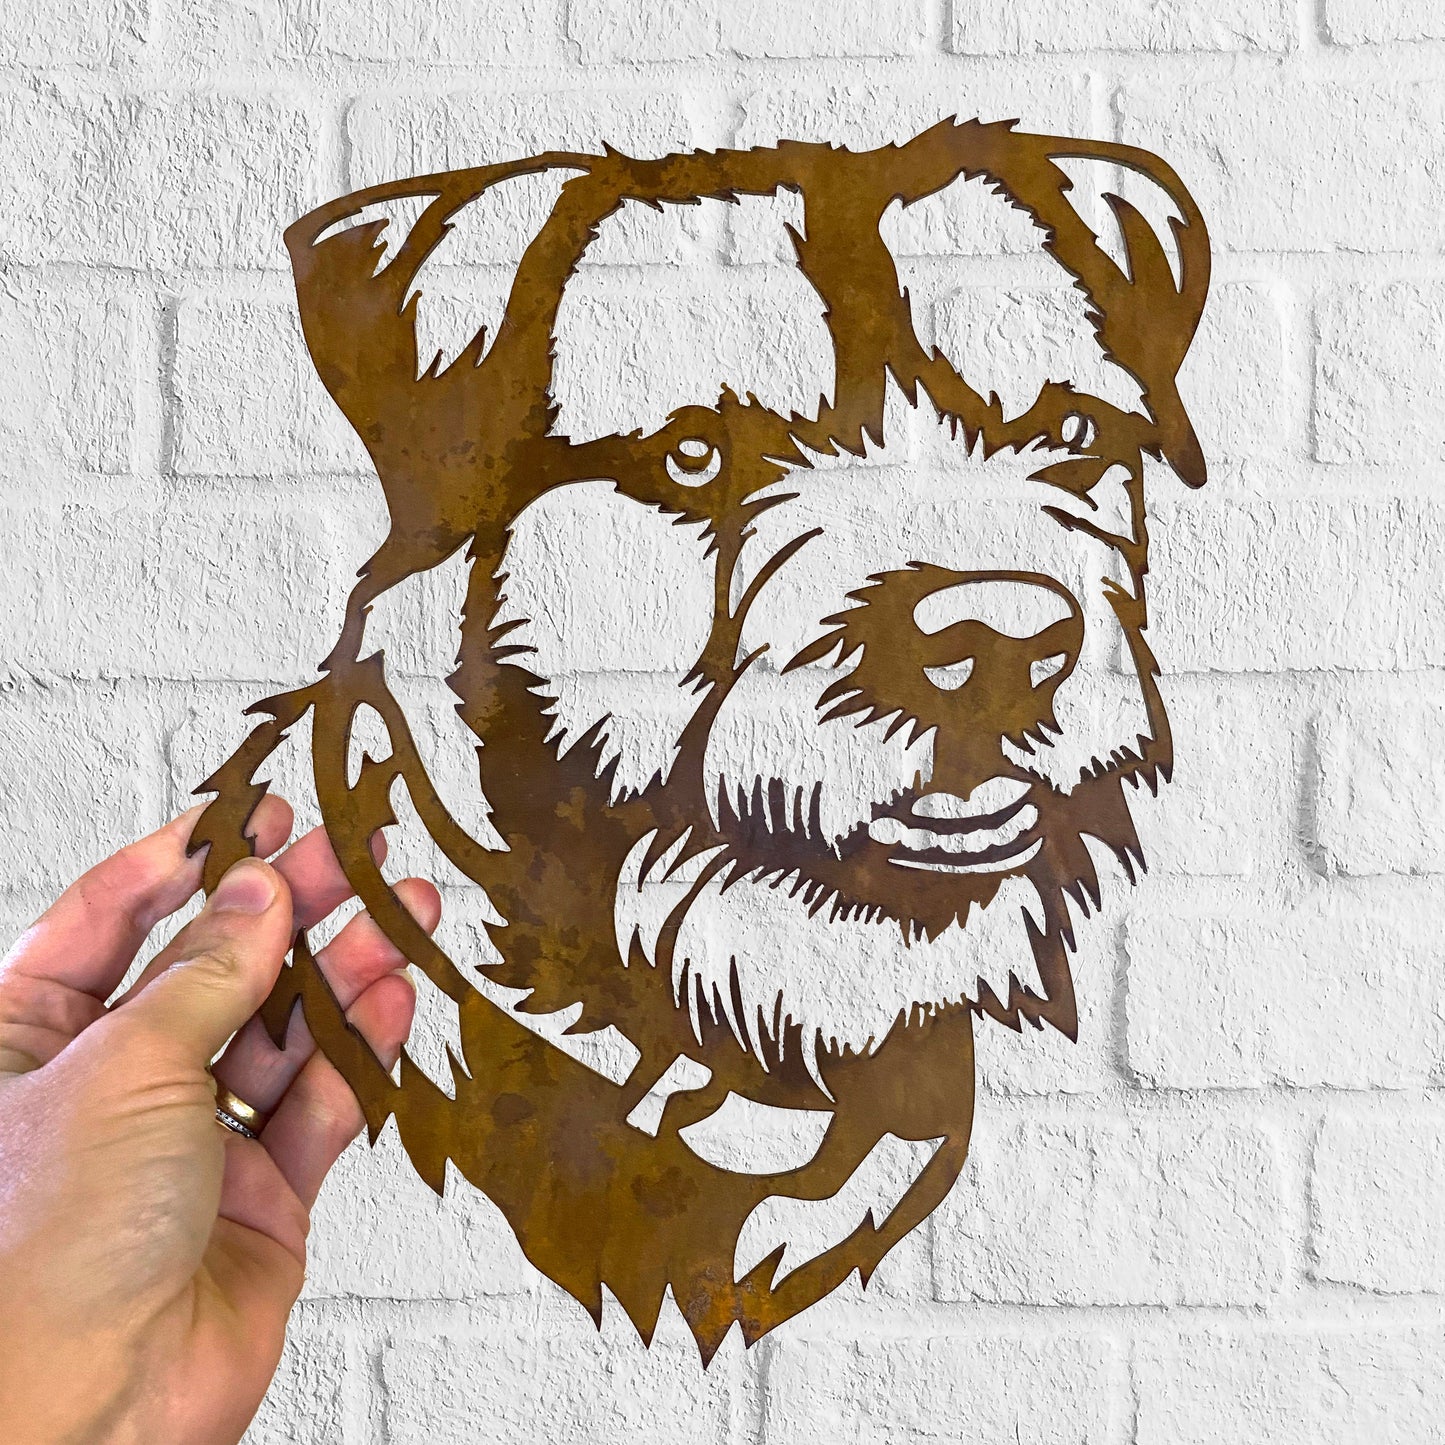 Border Terrier 2 - Rustic Rusted Pet Garden Sculpture - Solid Steel